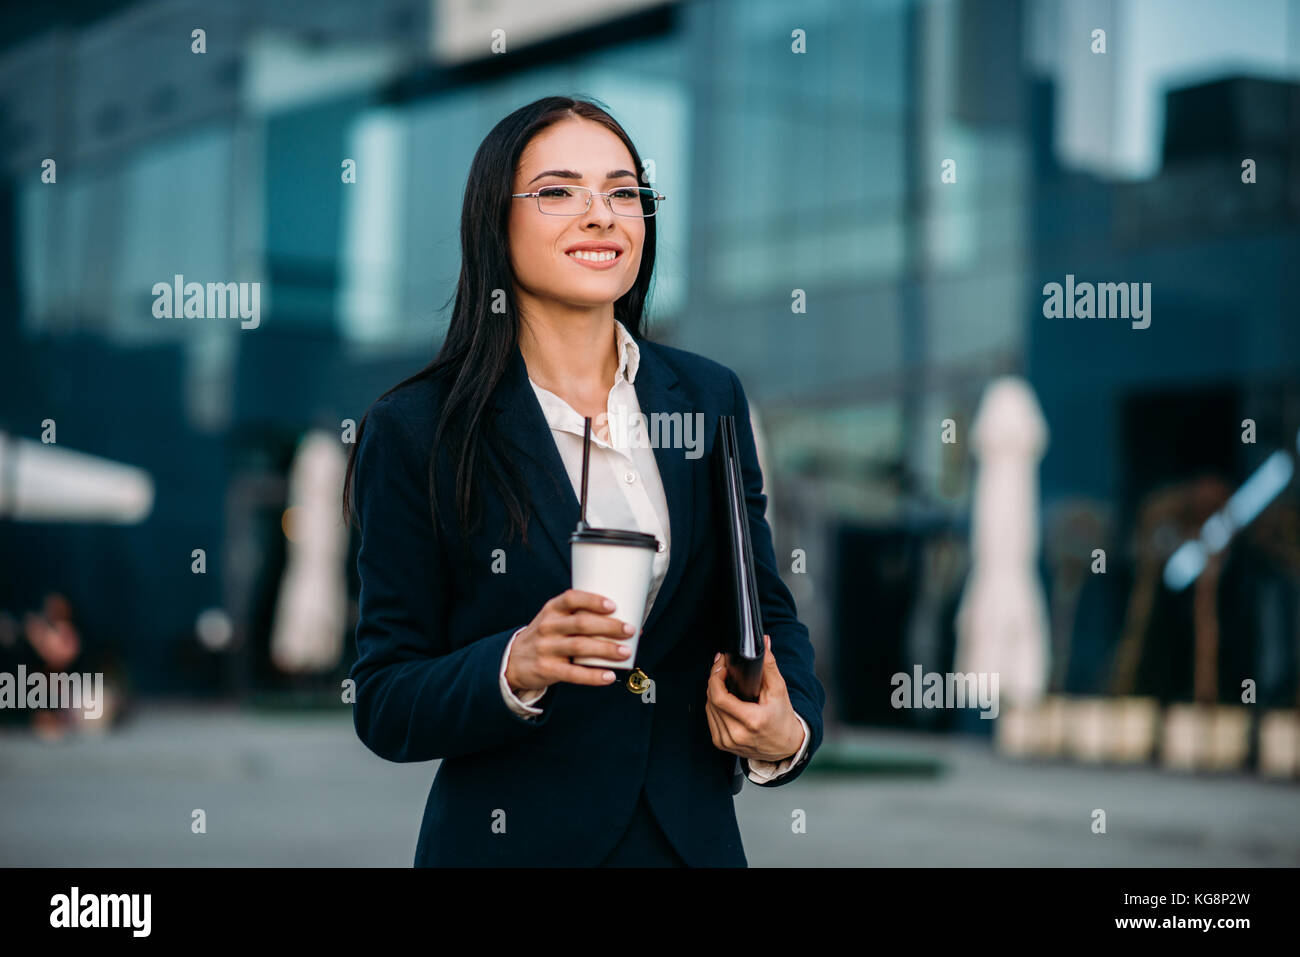 Business Woman in bicchieri con caffè in mani, contro il grattacielo. Edificio moderno centro finanziario, cityscape. successo imprenditore femmina Foto Stock